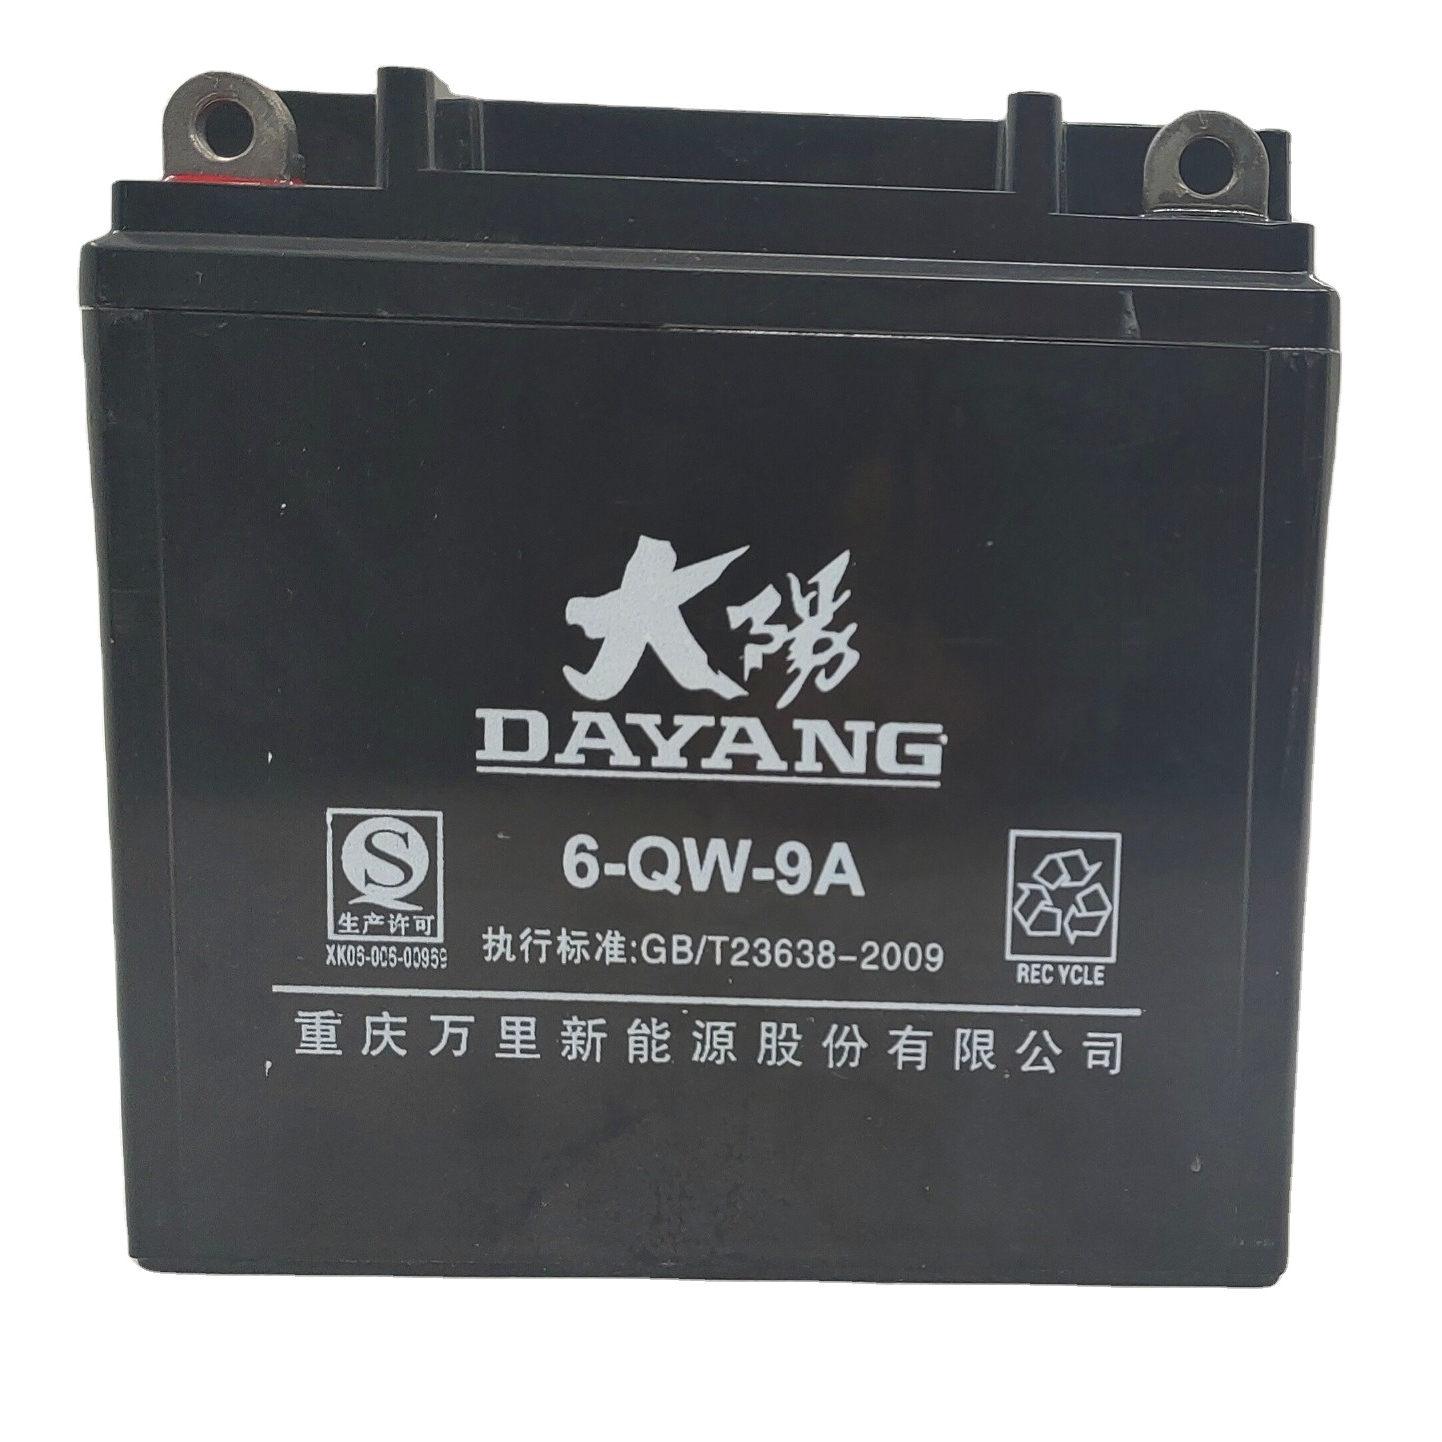 DAYANG 12V 9A Motorcycle Battery Black OEM Enterprise Member Material Accumulator Origin Type Maintenance-free Battery